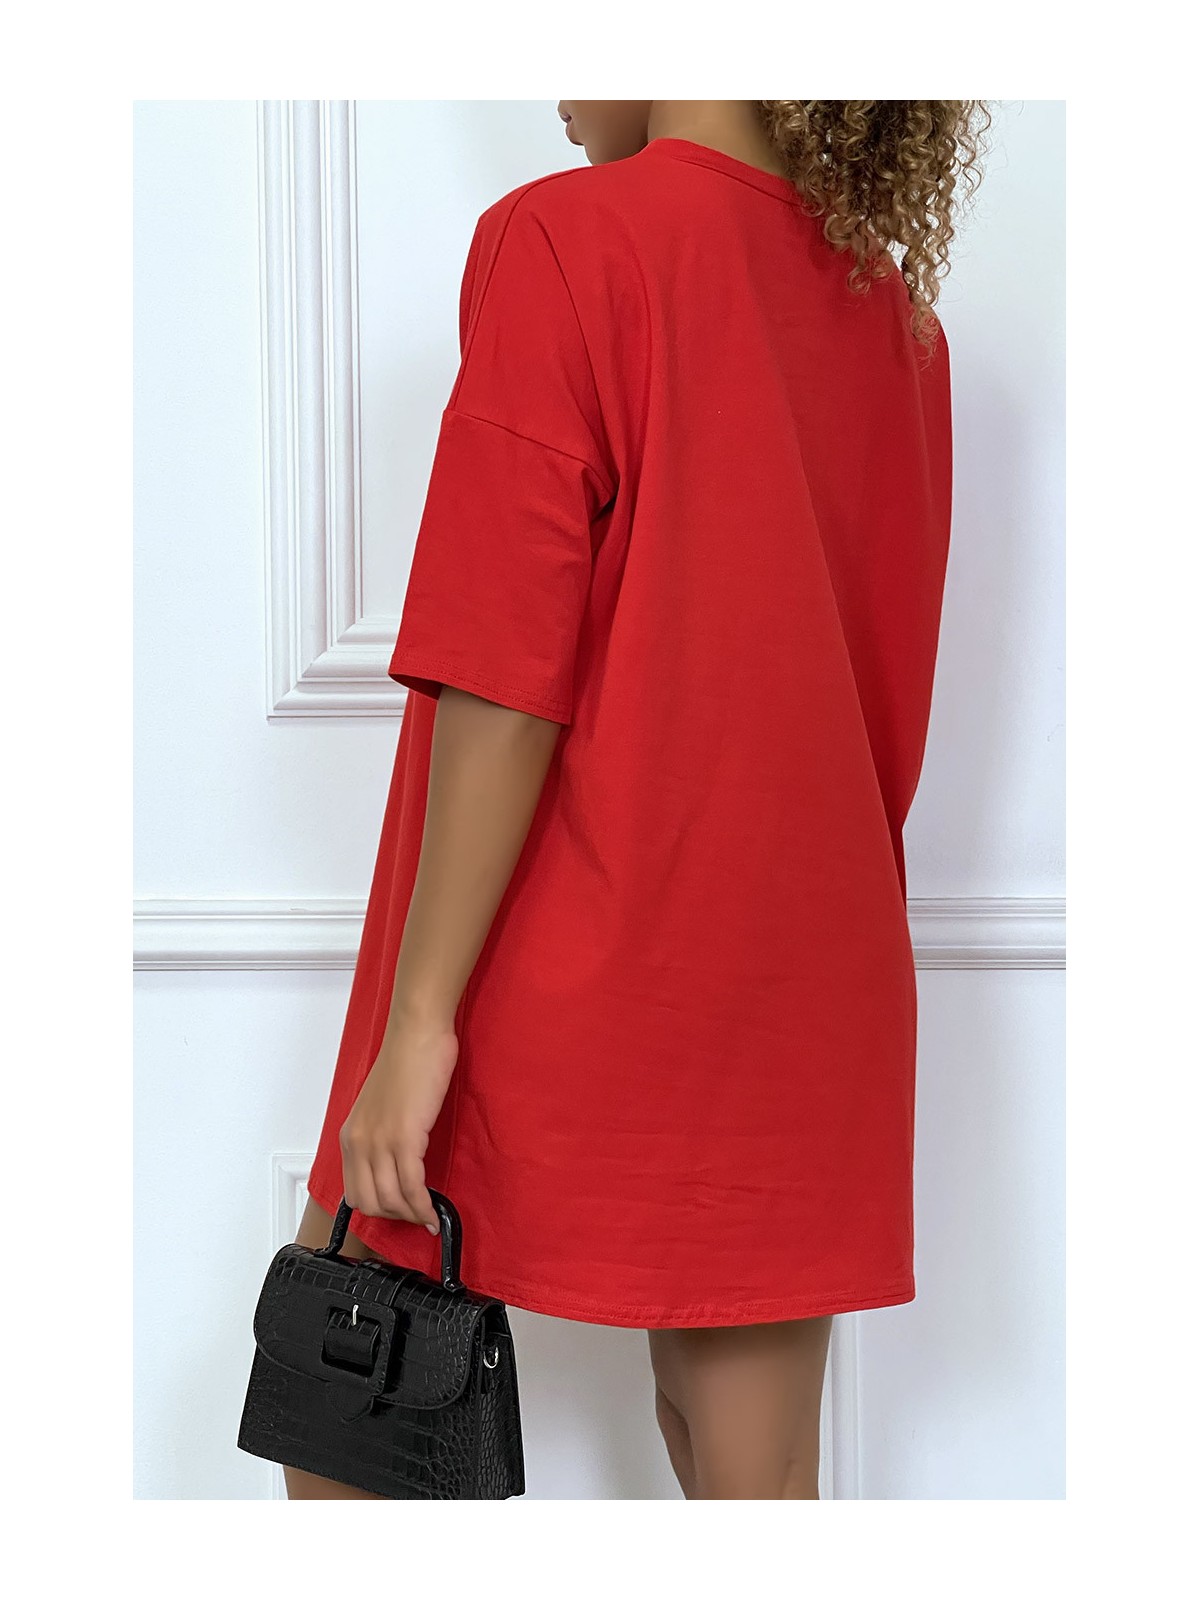 Tee-shirt oversize rouge tendance, écriture "D/or", manche mi-longue - 4